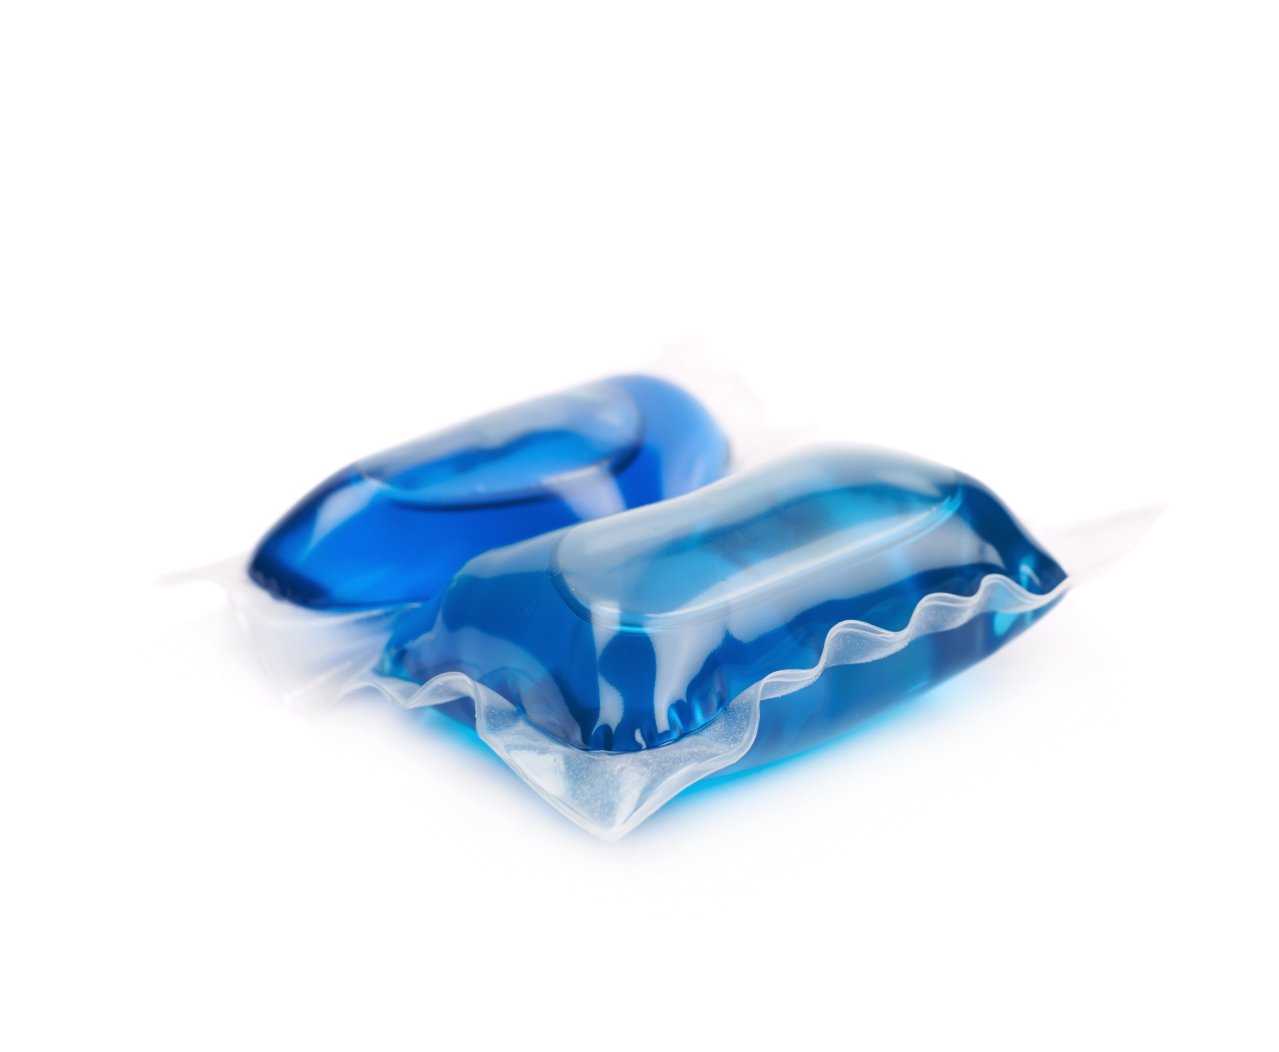 Blue liquitab laundry capsules.